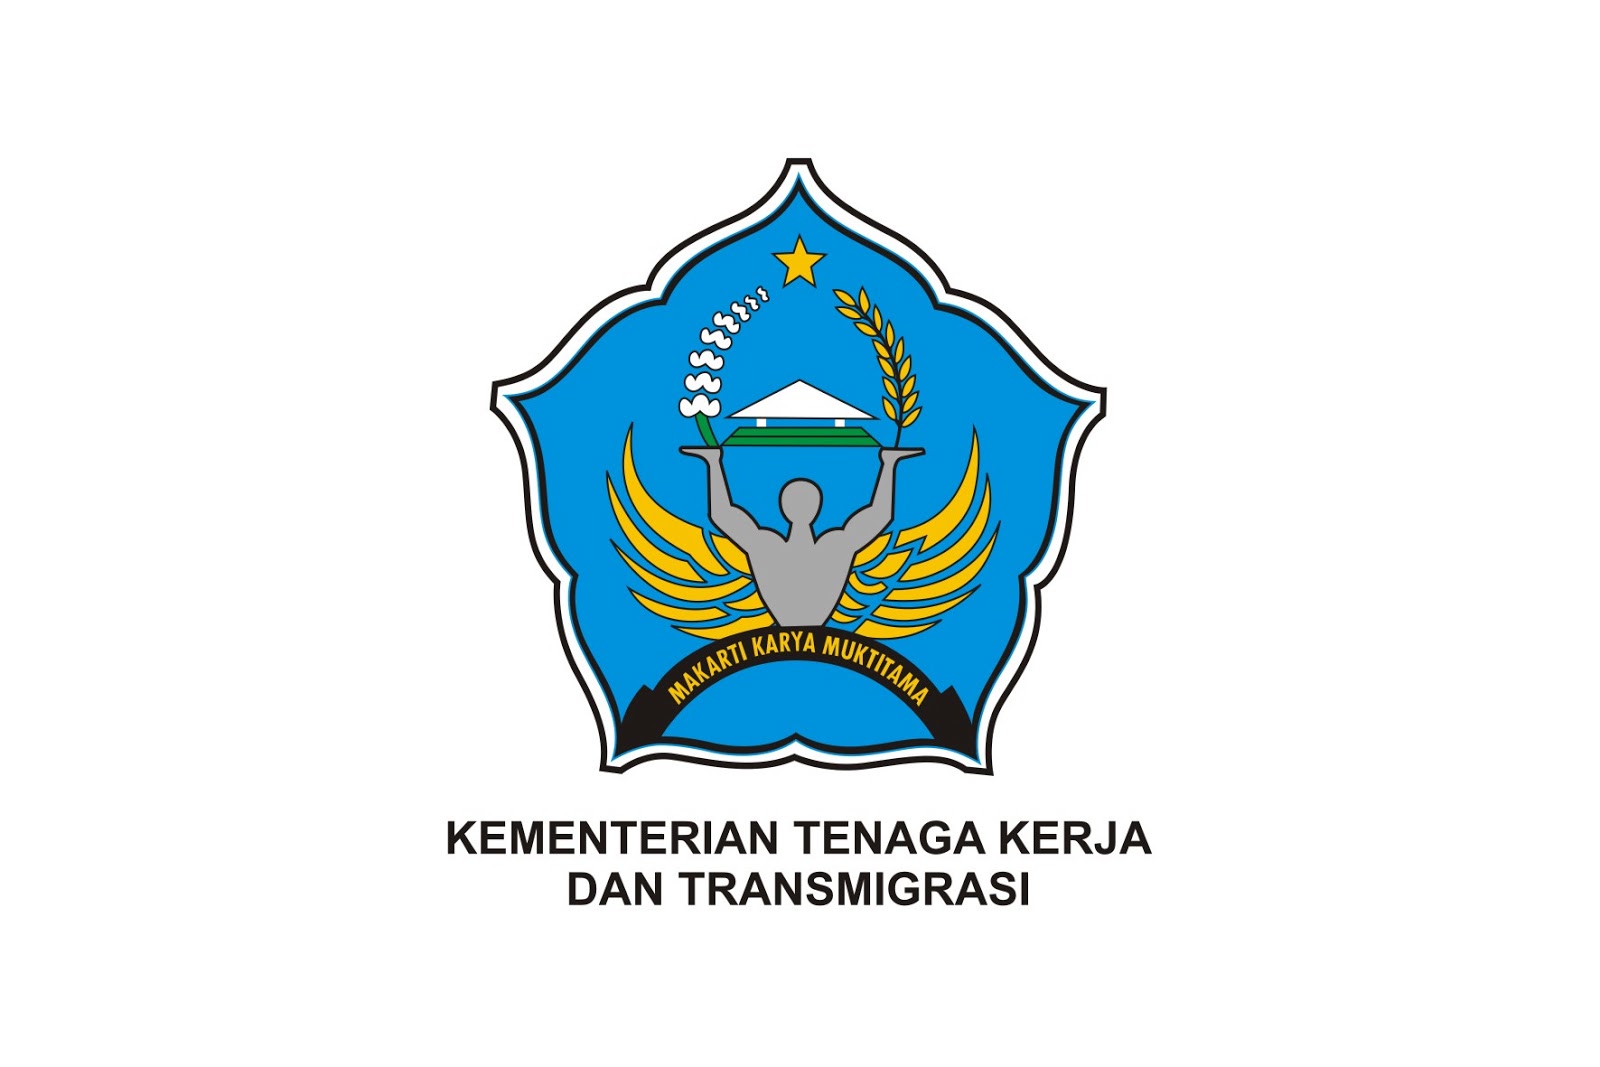 Koleksi Lambang Dan Logo Lambang Kementerian Tenaga K Vrogue Co